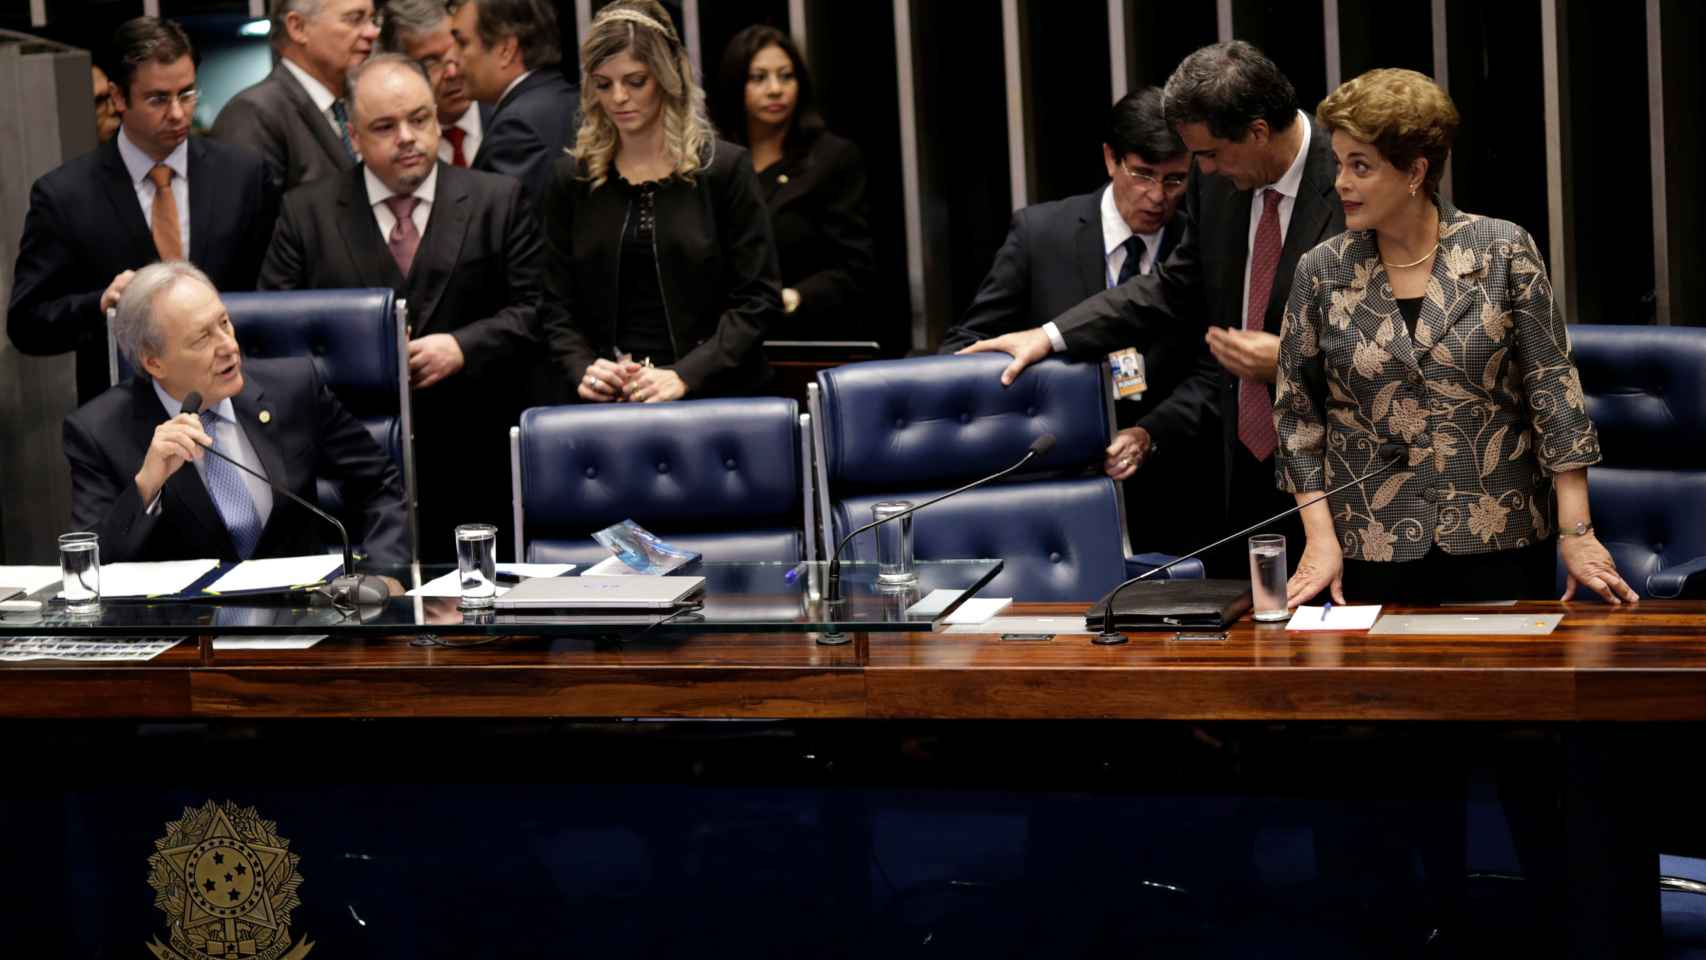 La presidenta de Brasil afirma ser víctima de una conspiración.